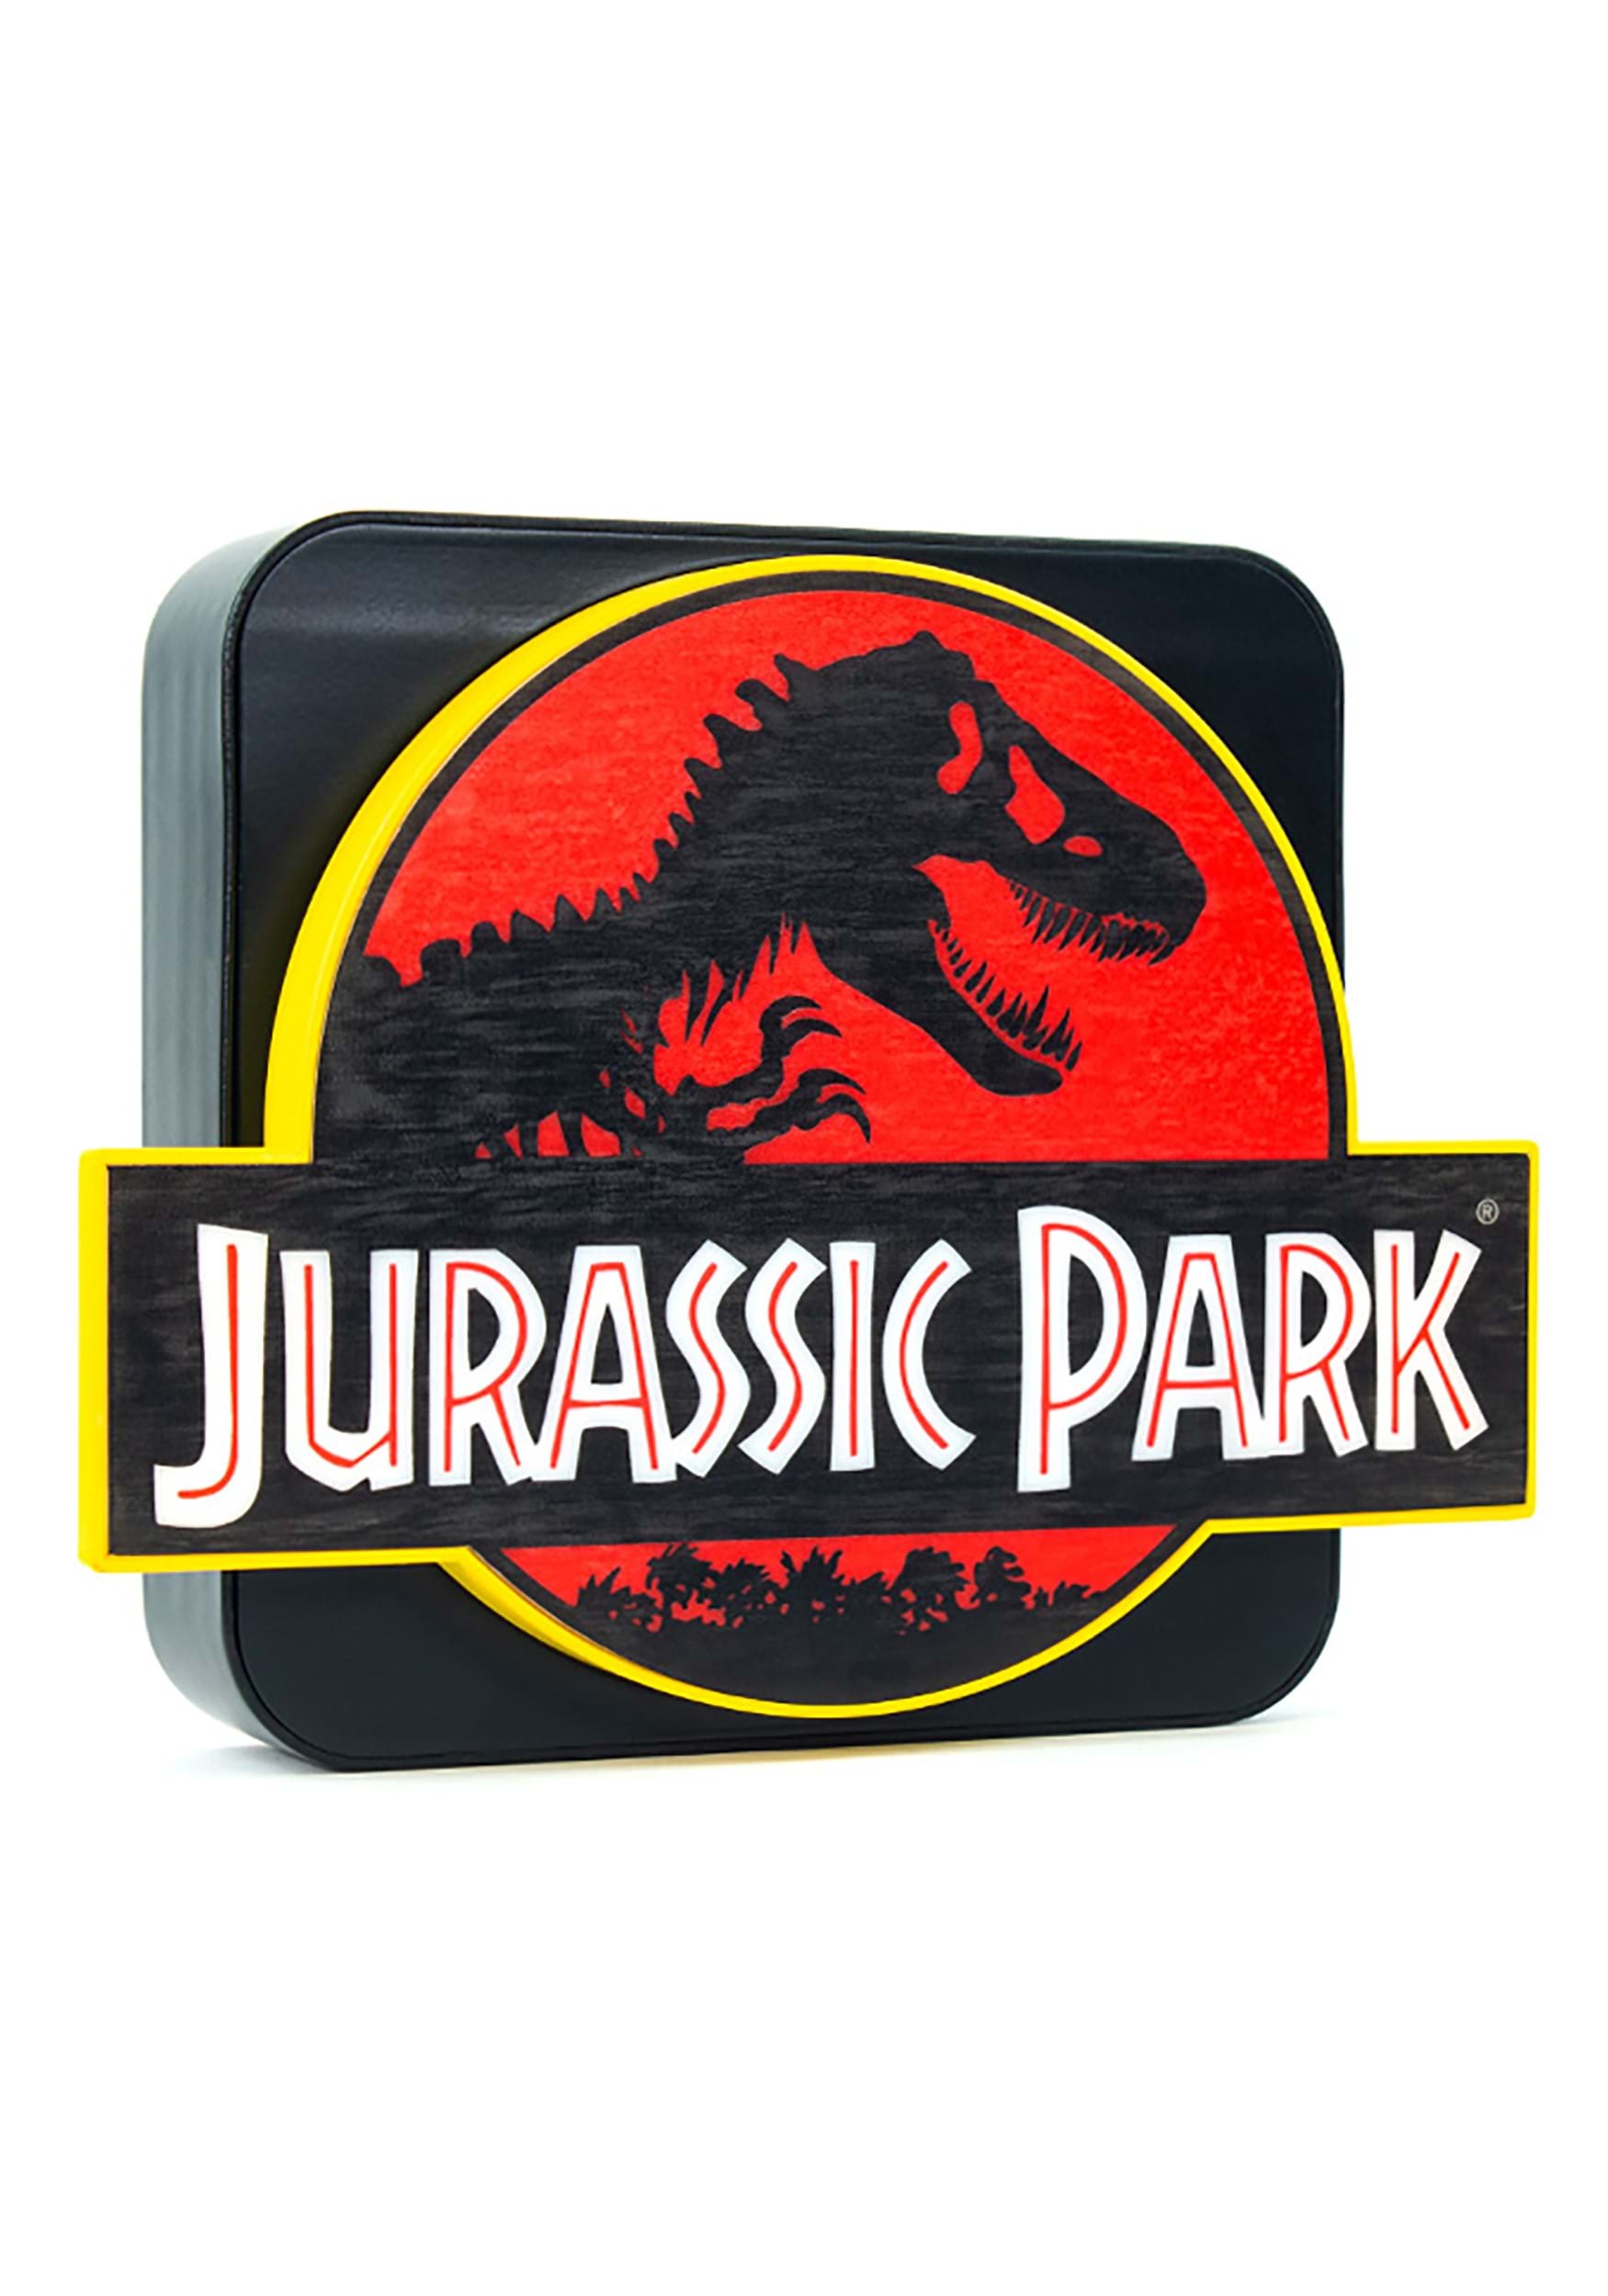 Official 3D Jurassic Park Desk/Wall Lamp